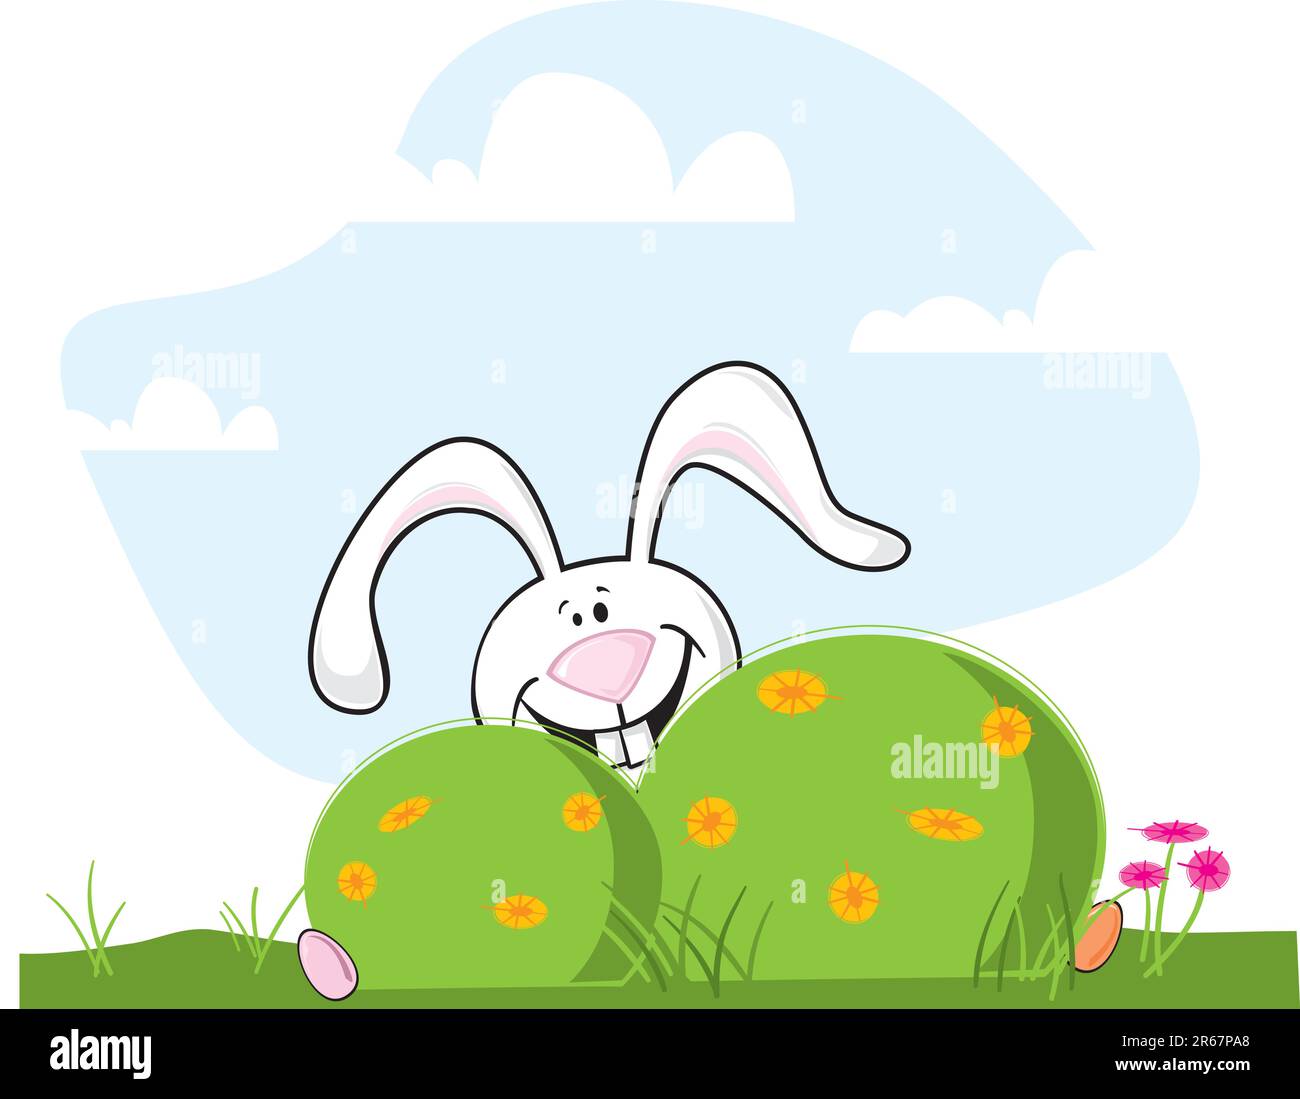 Un petit lapin de pâques, un vecteur de dessin animé, se cache derrière un Bush Illustration de Vecteur